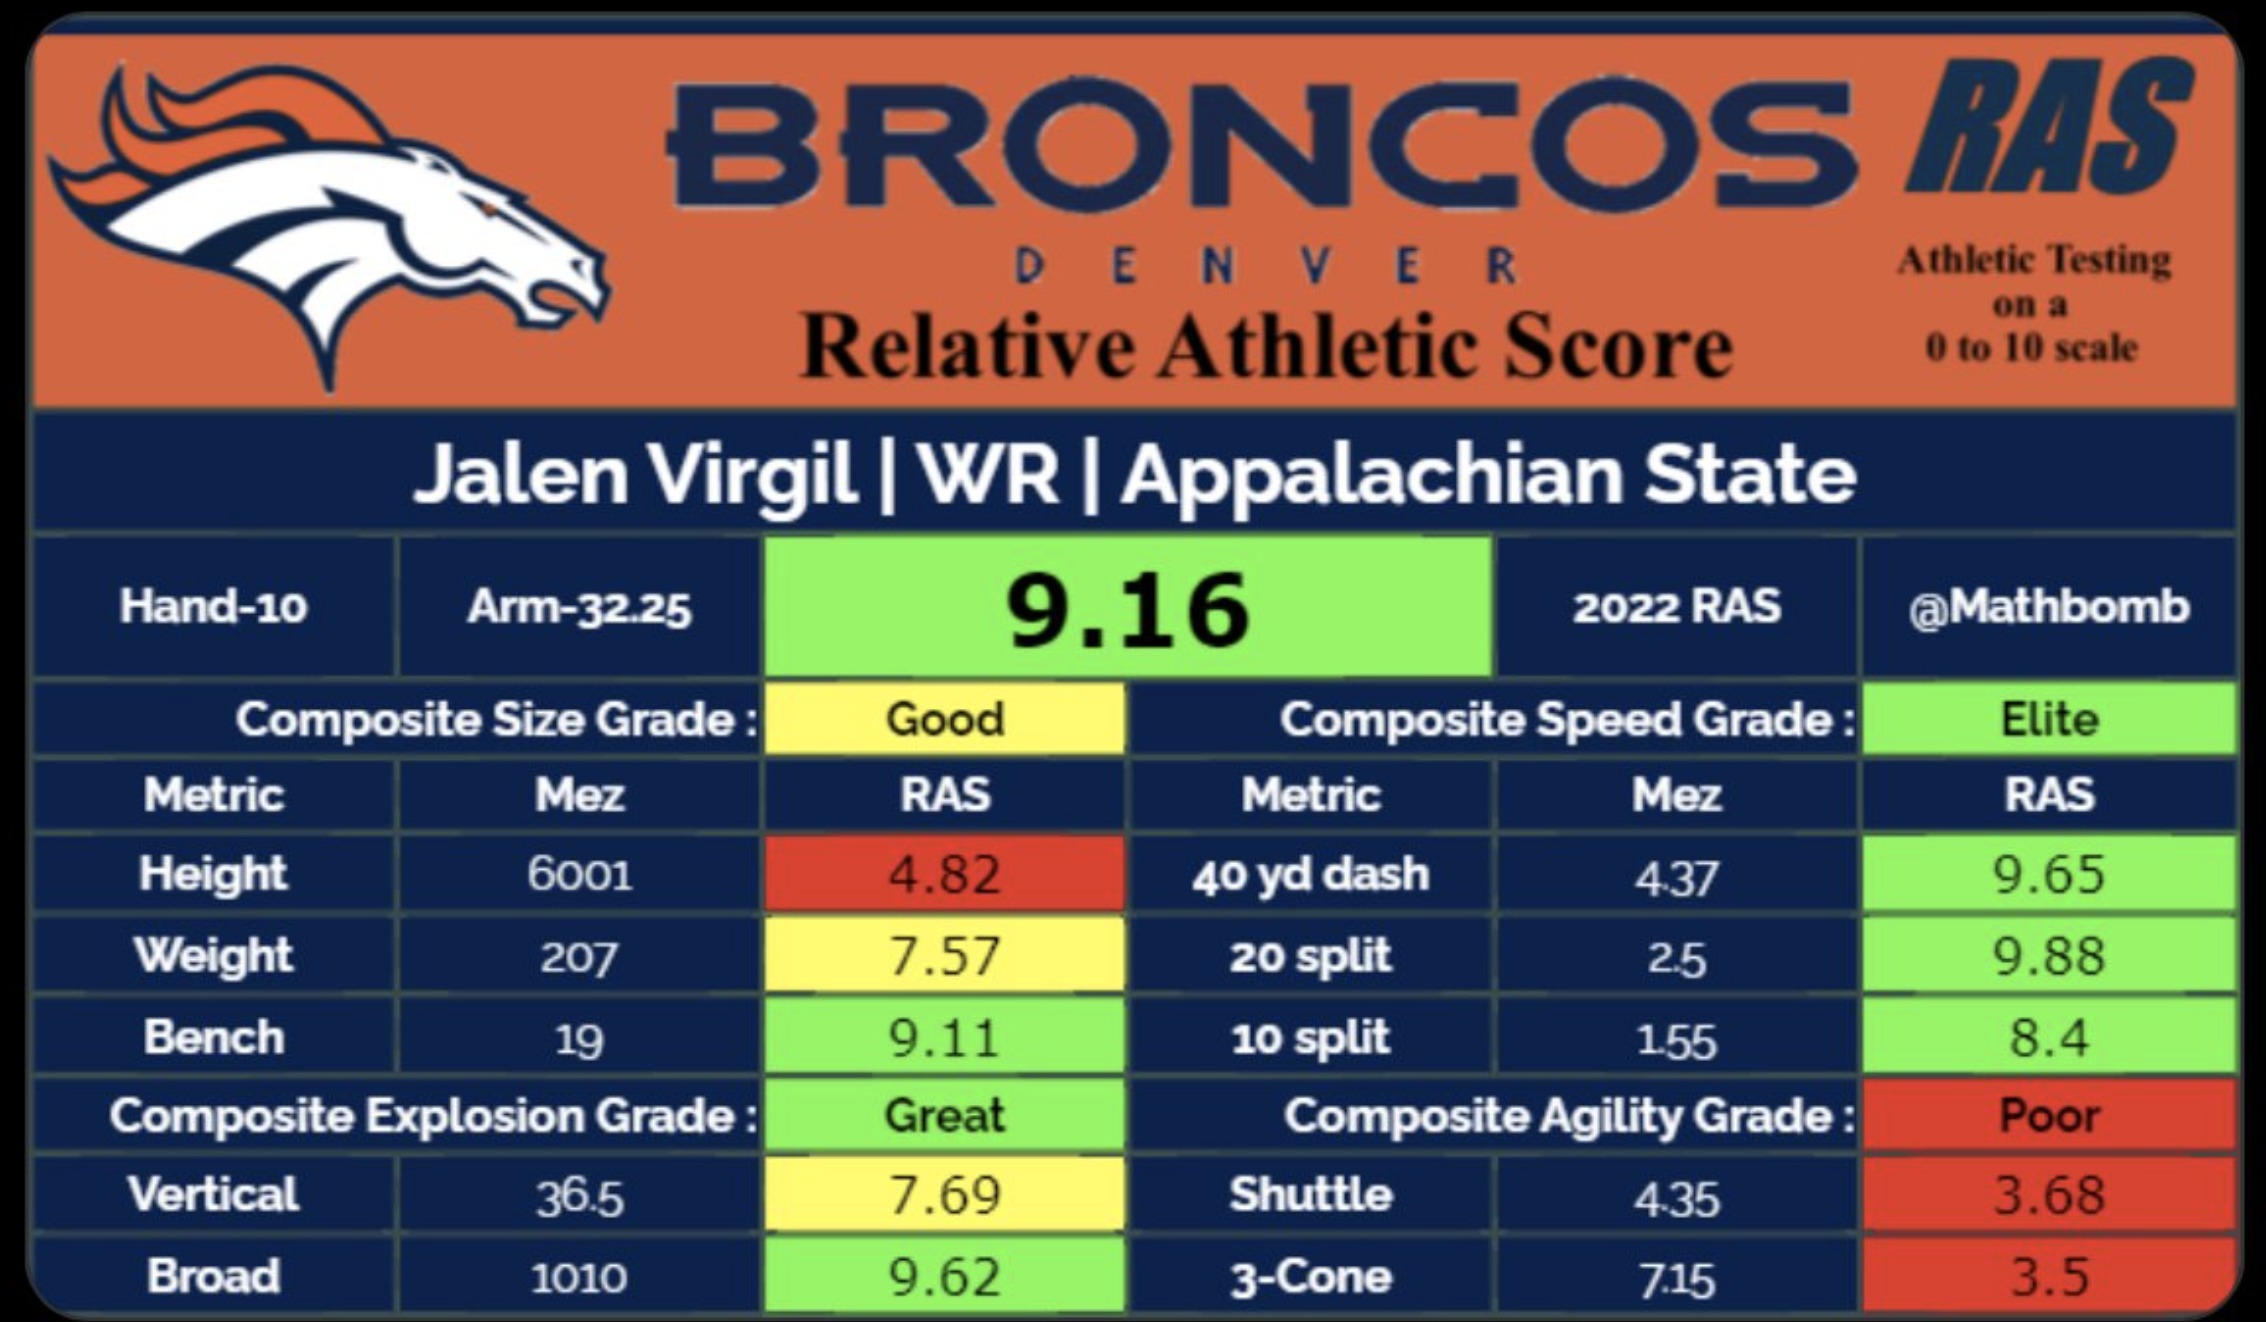 Denver Broncos WR Jalen Virgil's RAS